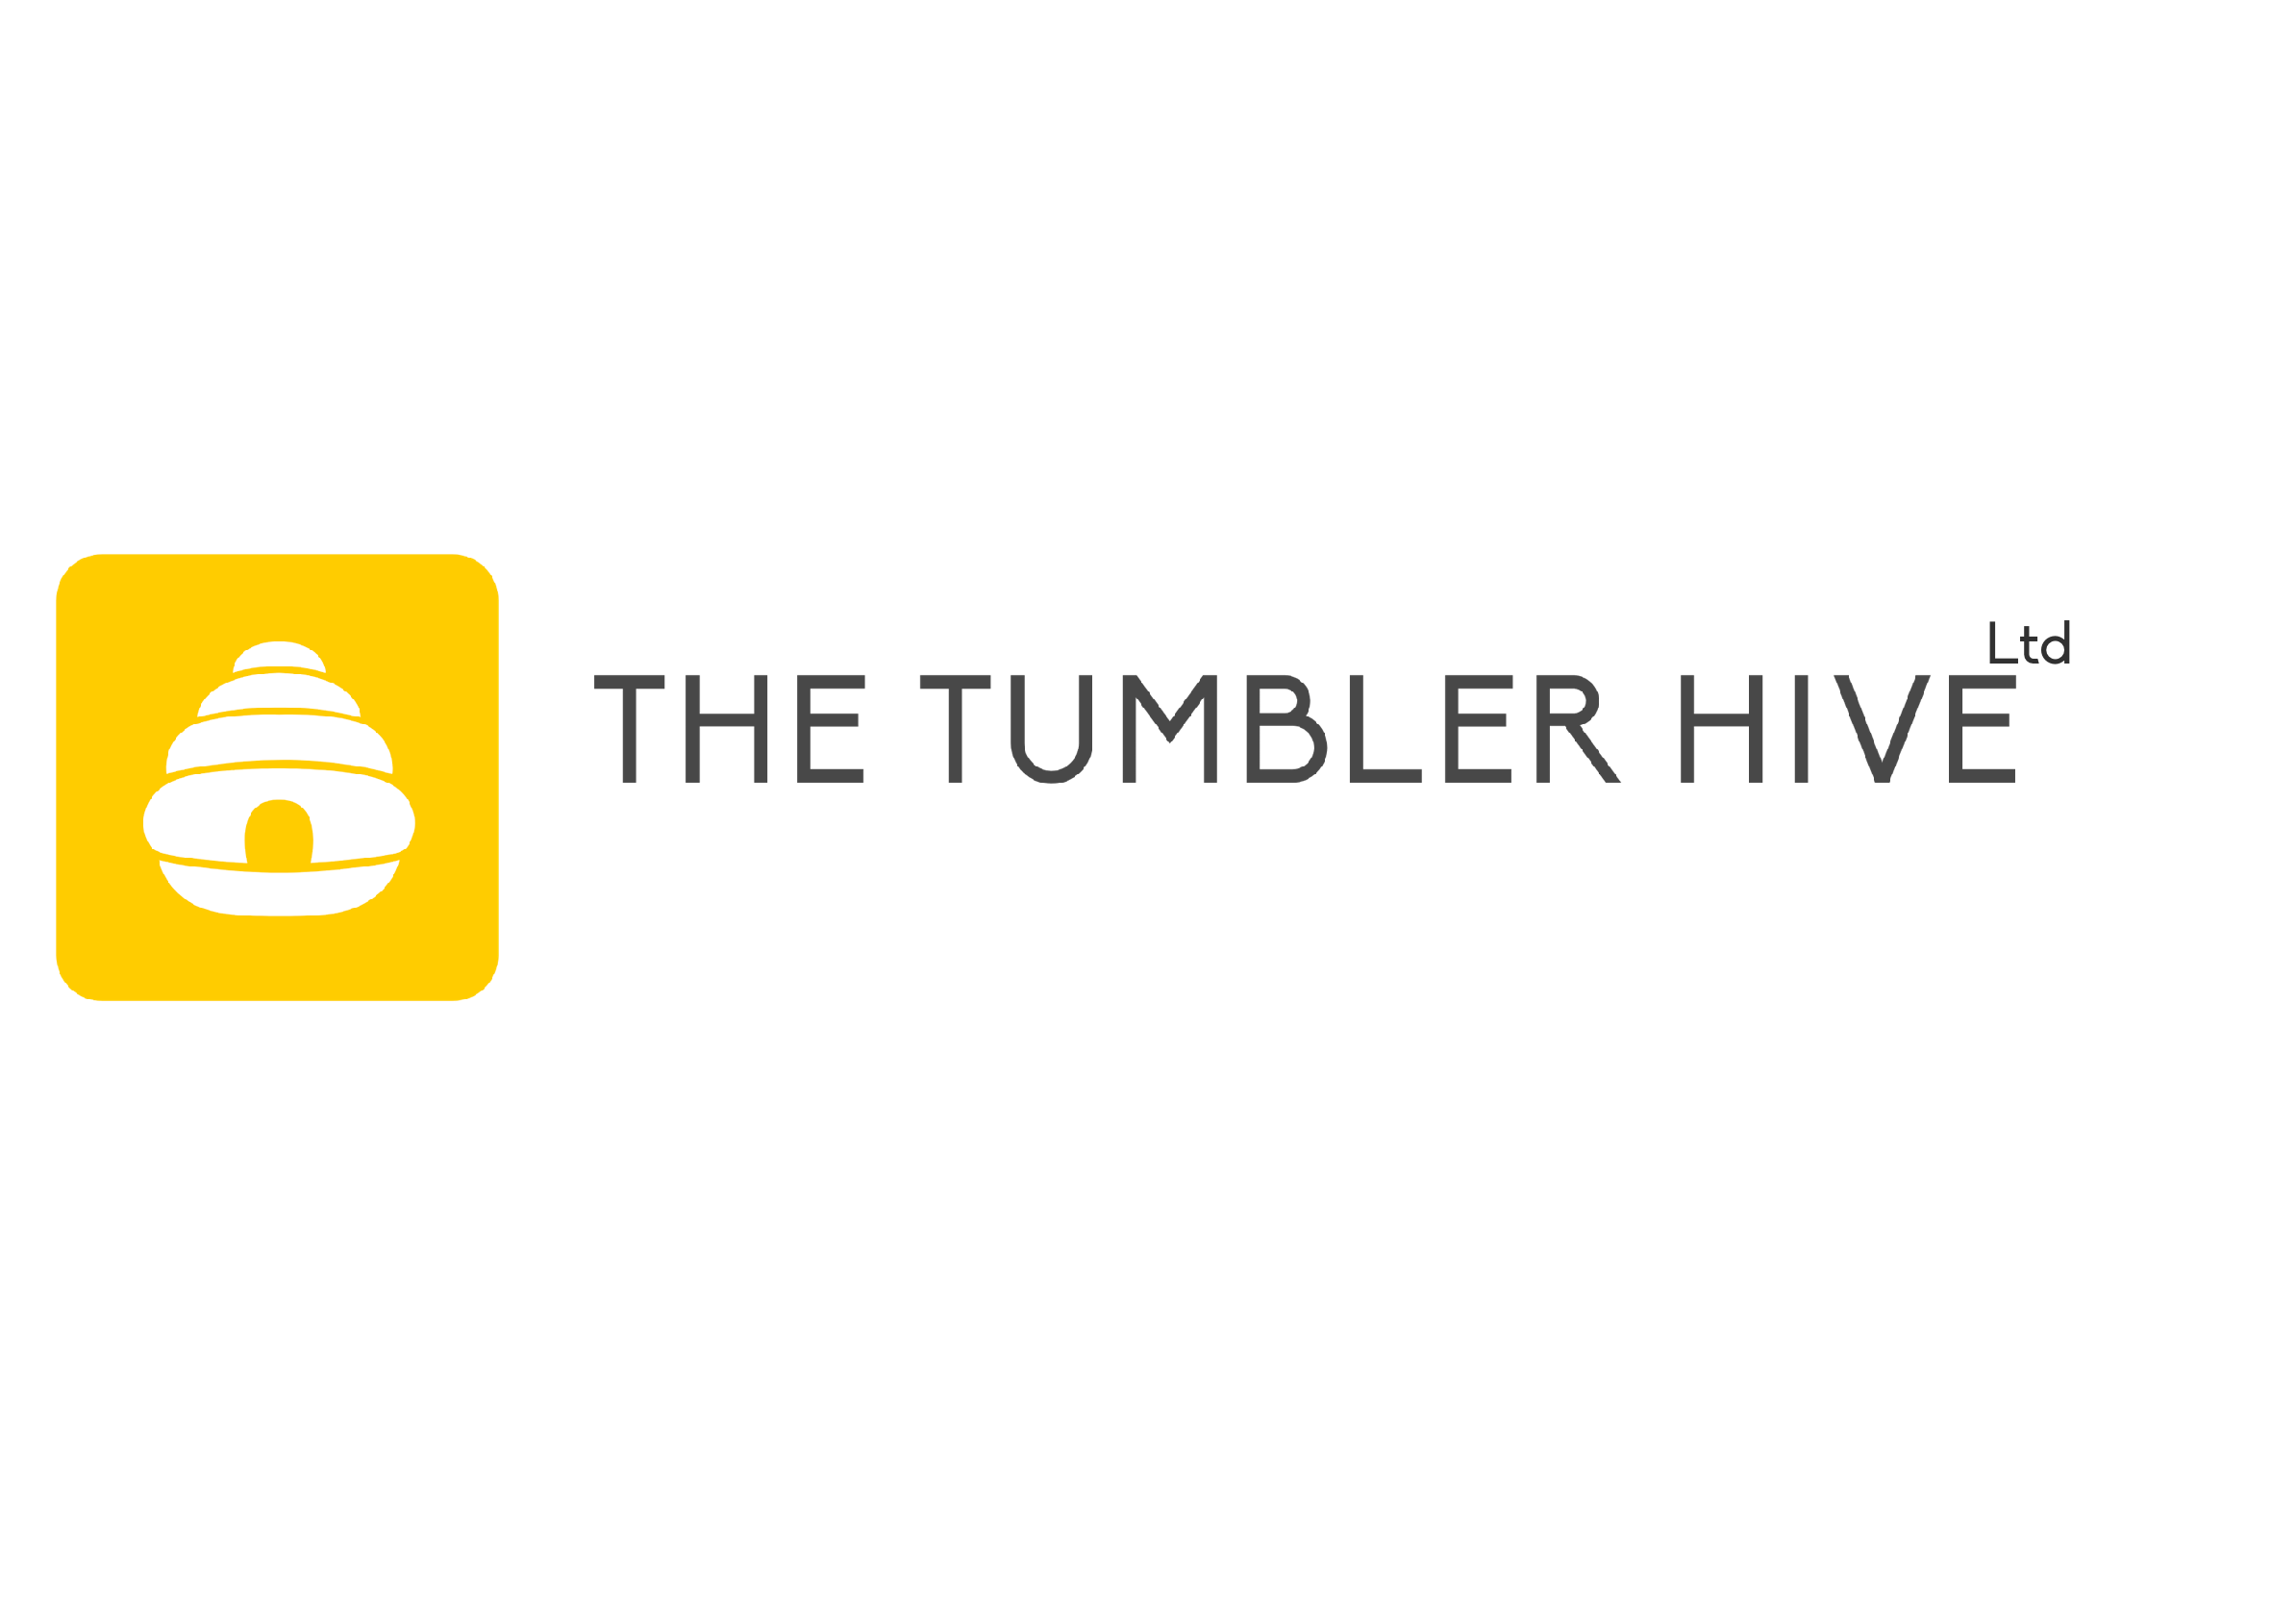 The Tumbler Hive